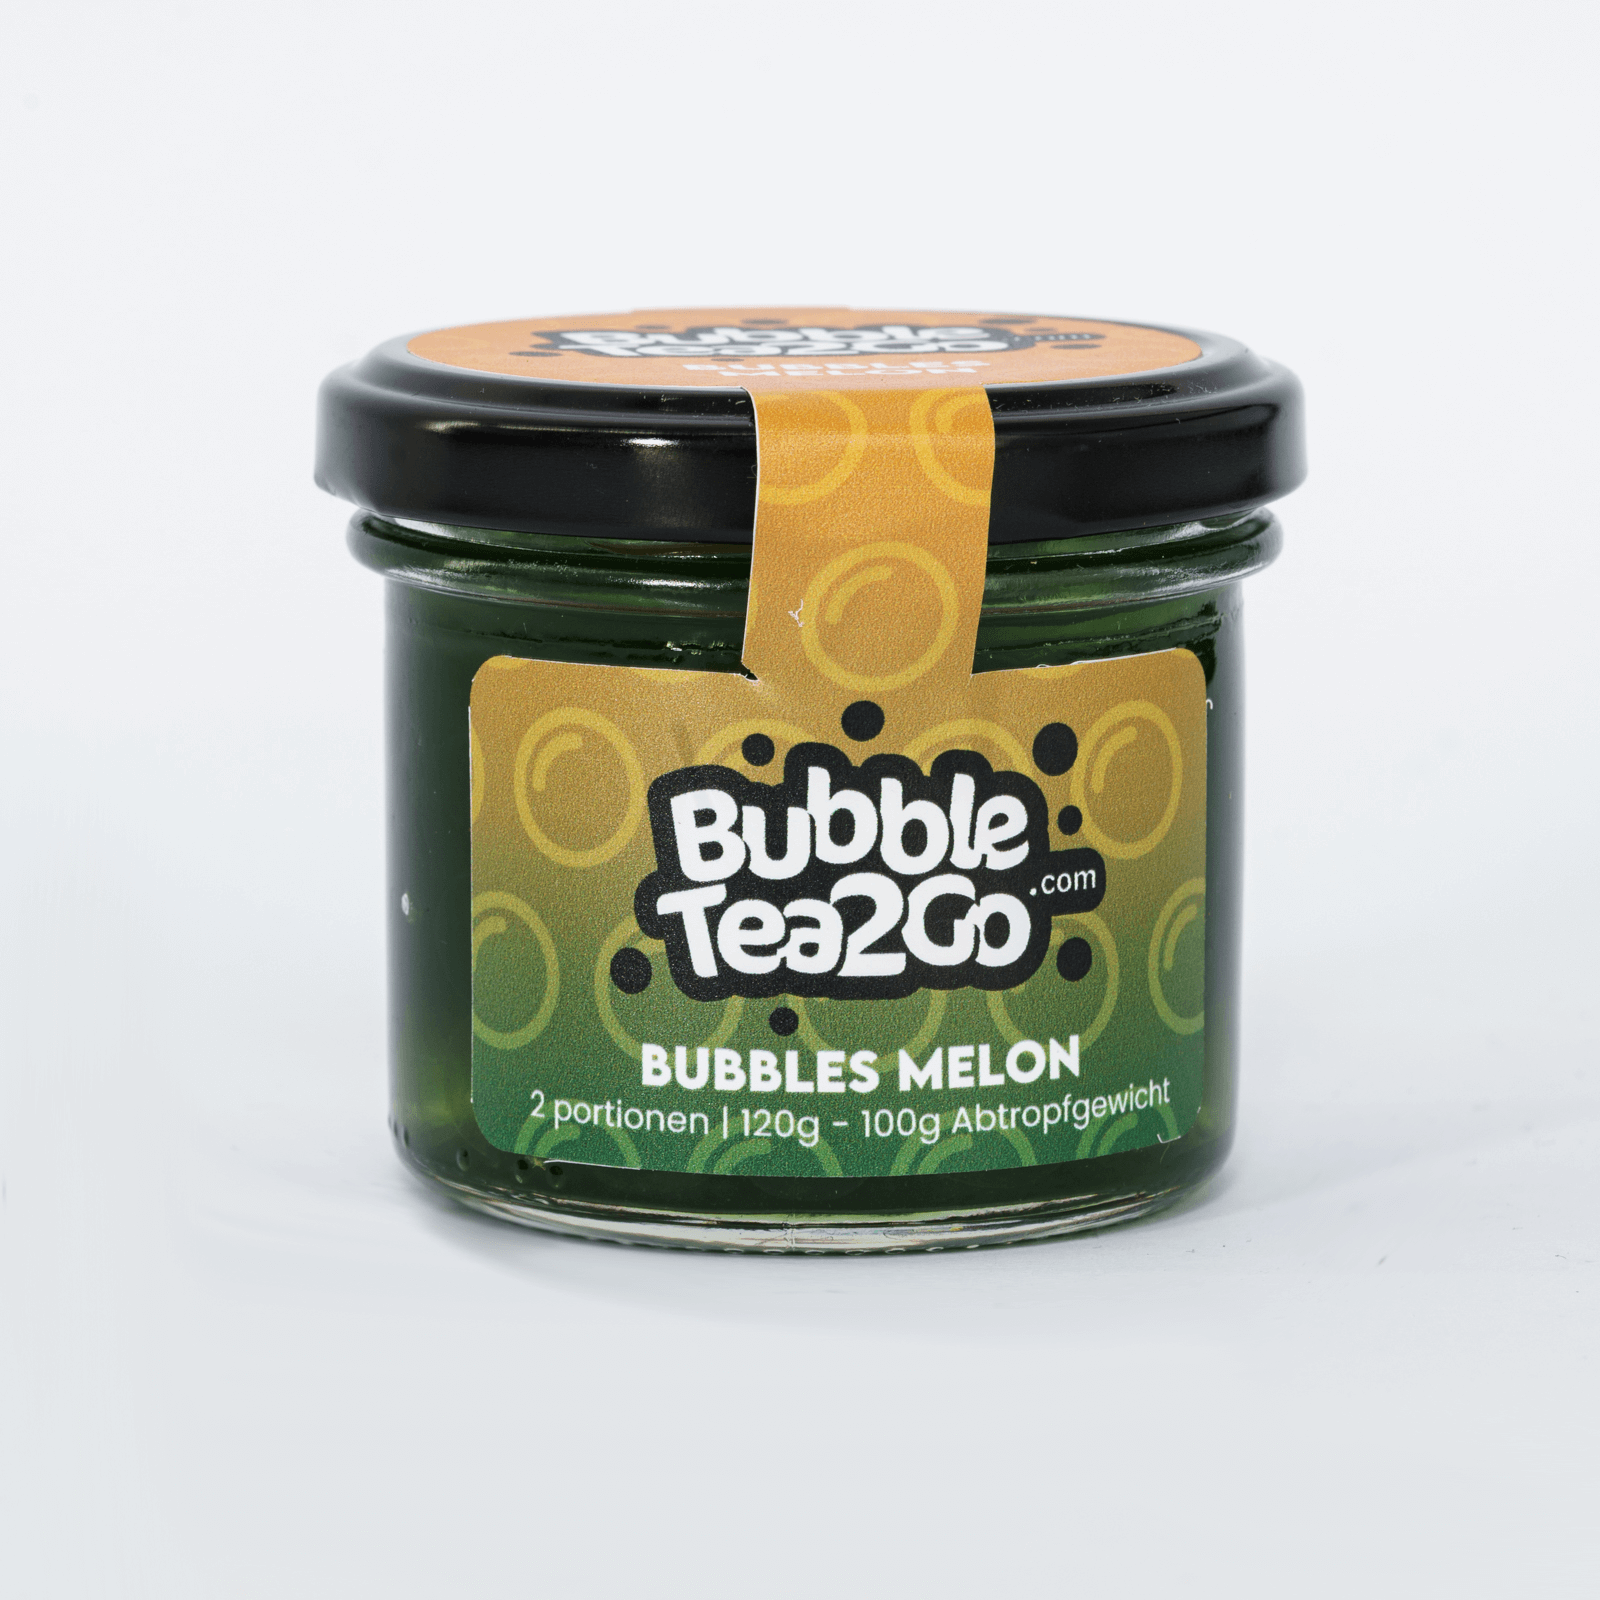 Bubbles - Melon 2 Portionen